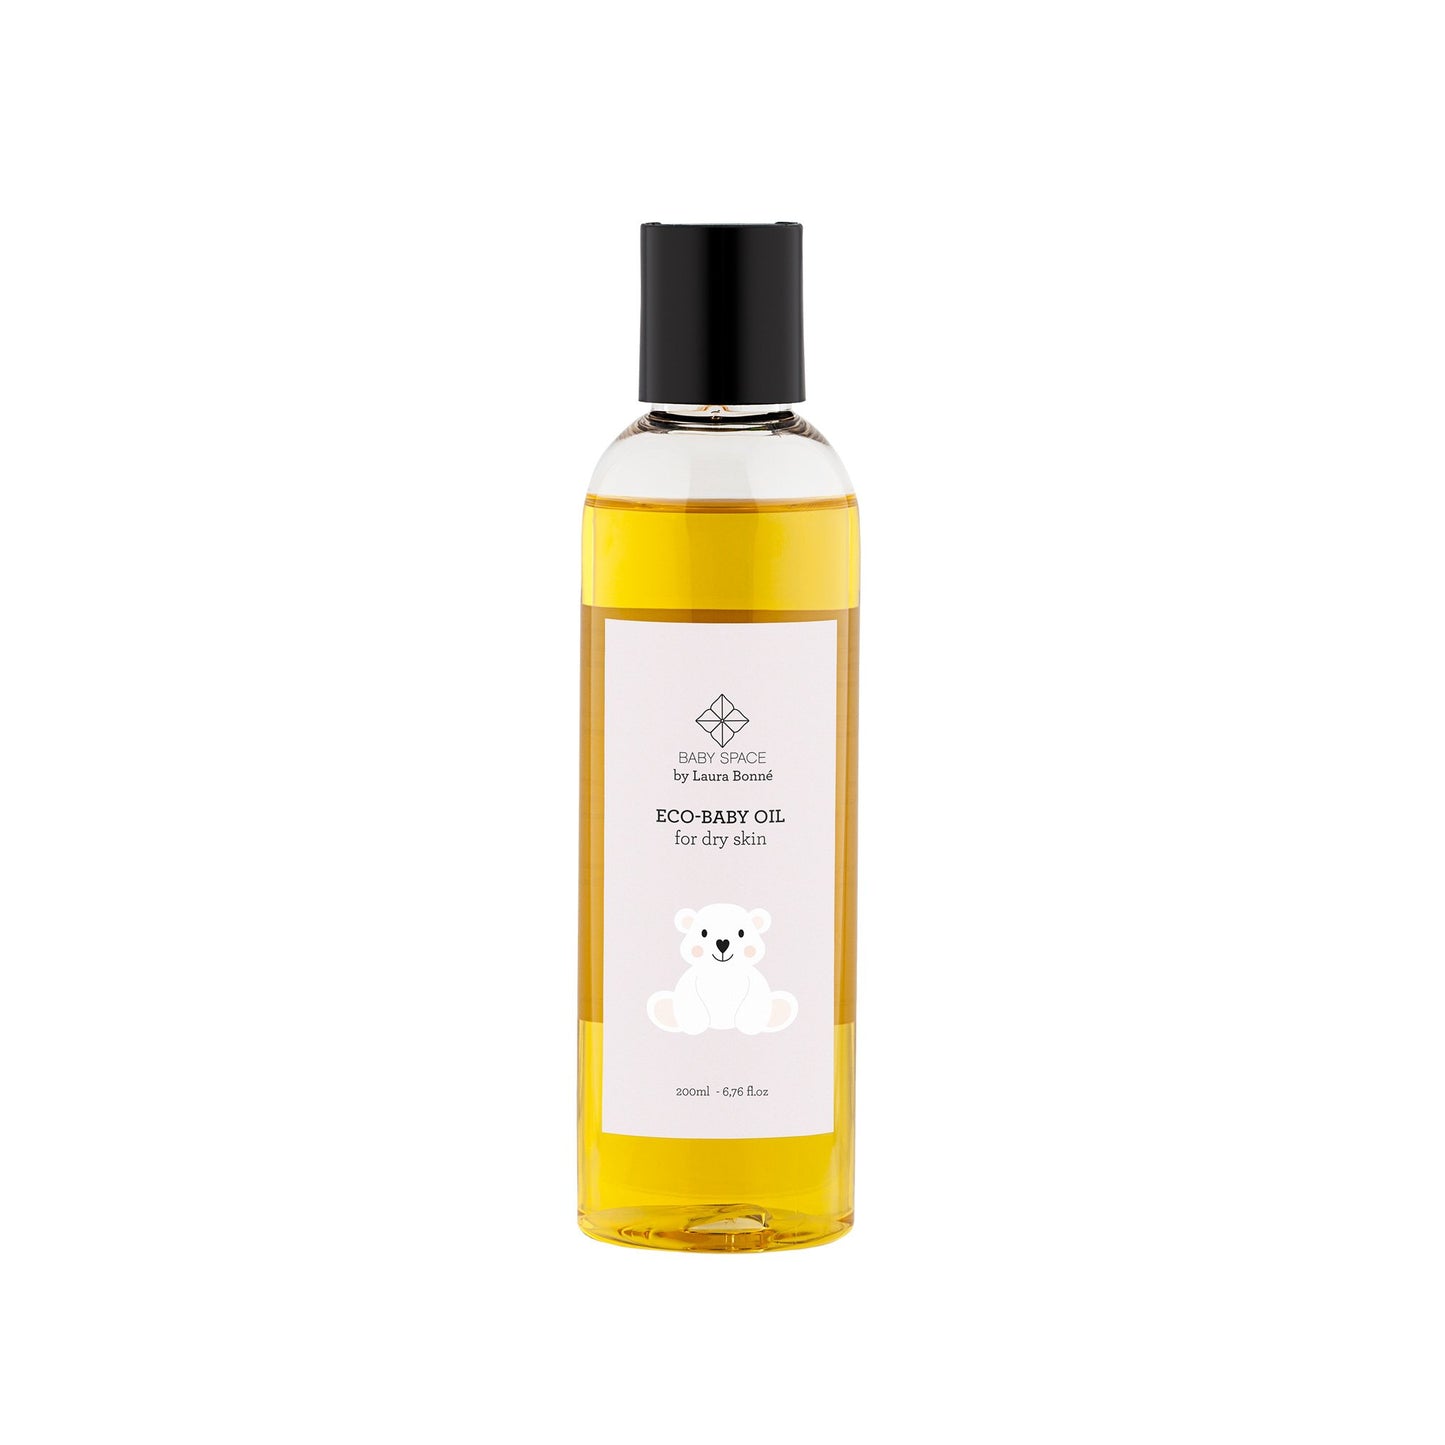 ECO-BABY OIL for dry skin - Parfumeriet Hørsholm